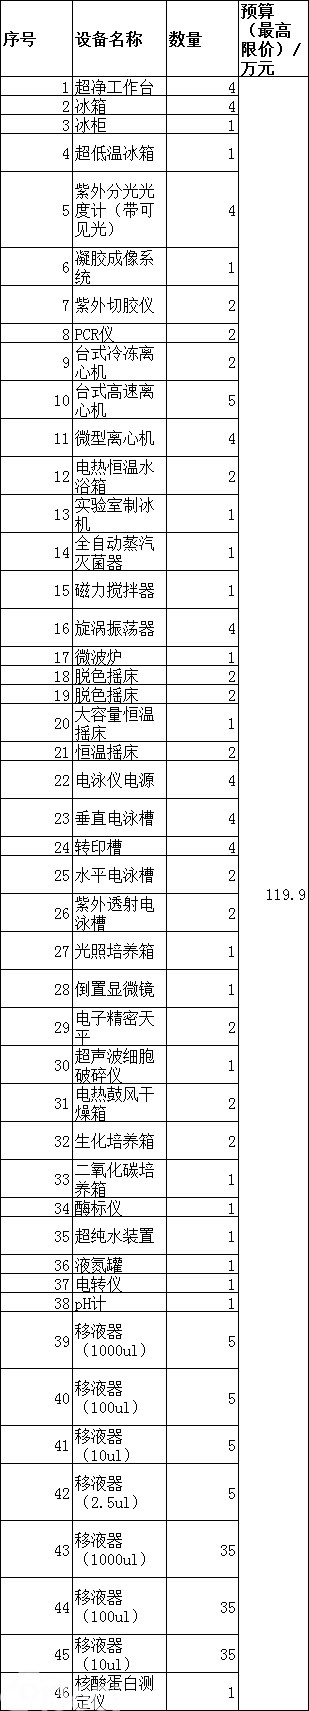 广东医科大学生物技术专业实验室购置教学设备一批（0835-1701336N9531）招标公告